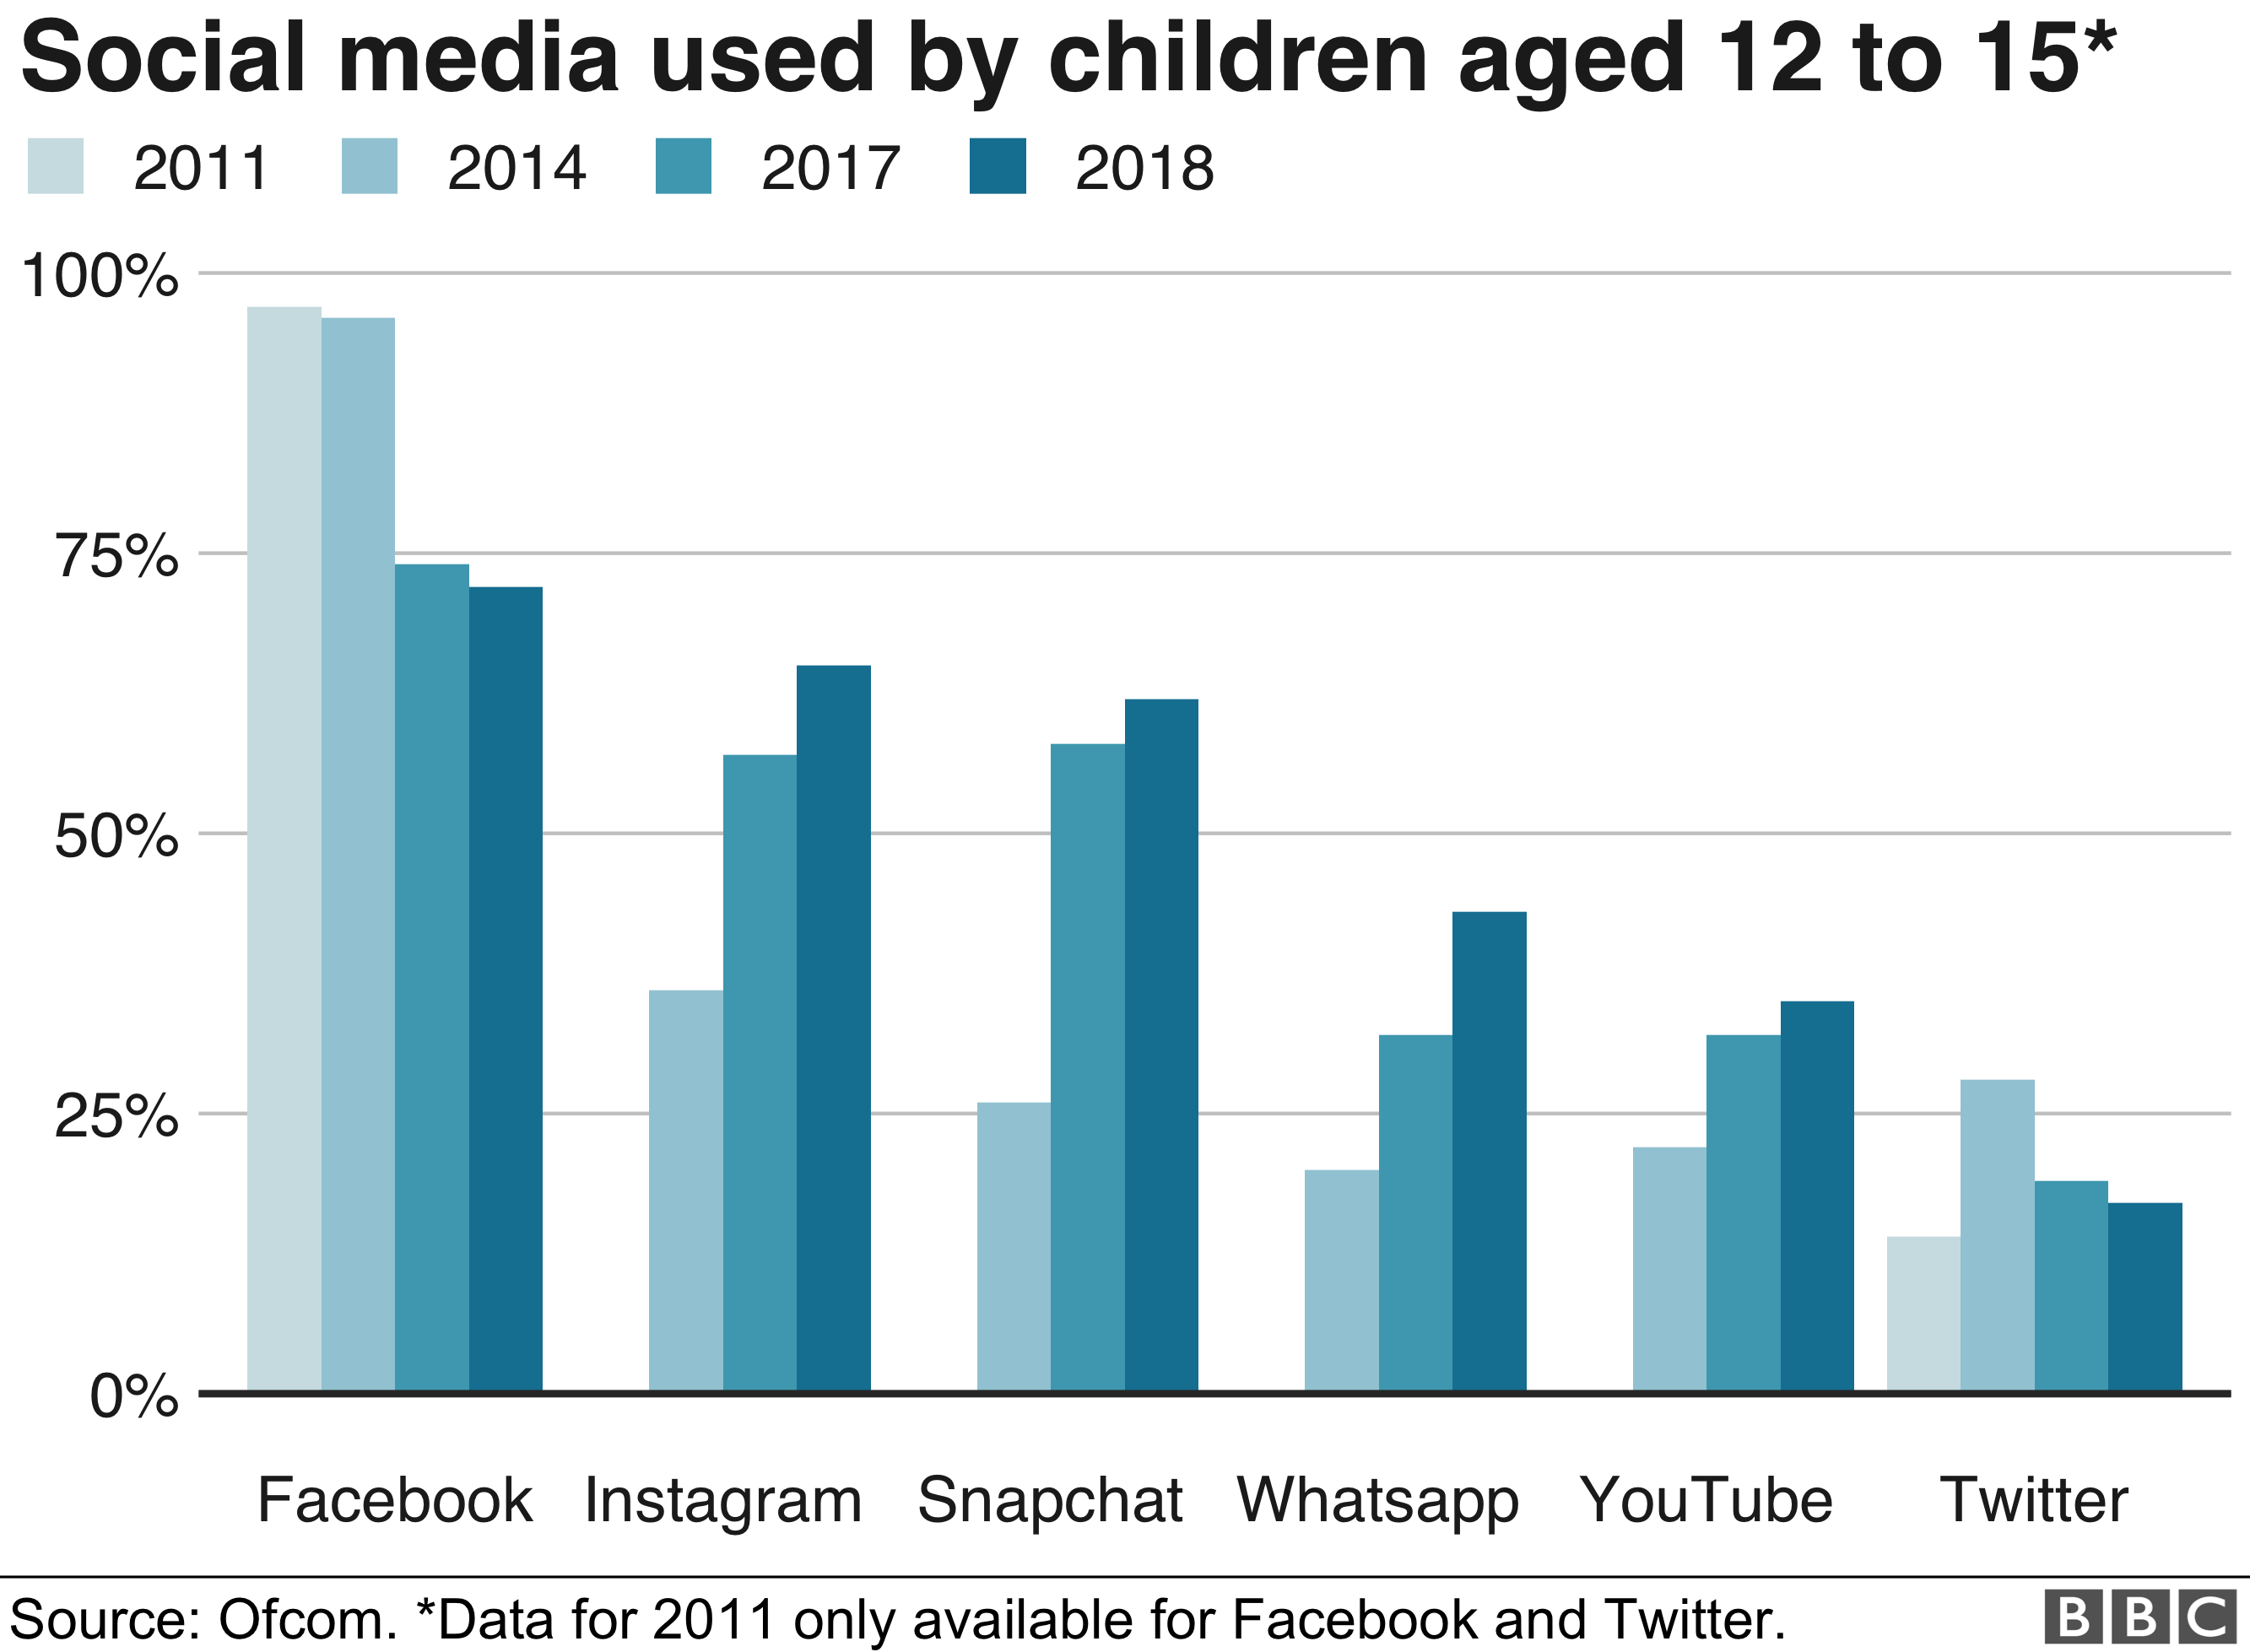 Диаграмма Ofcom, показывающая, что использование Facebook детьми в возрасте 12-15 лет снизилось с 97% в 2011 году до 72% в 2018 году